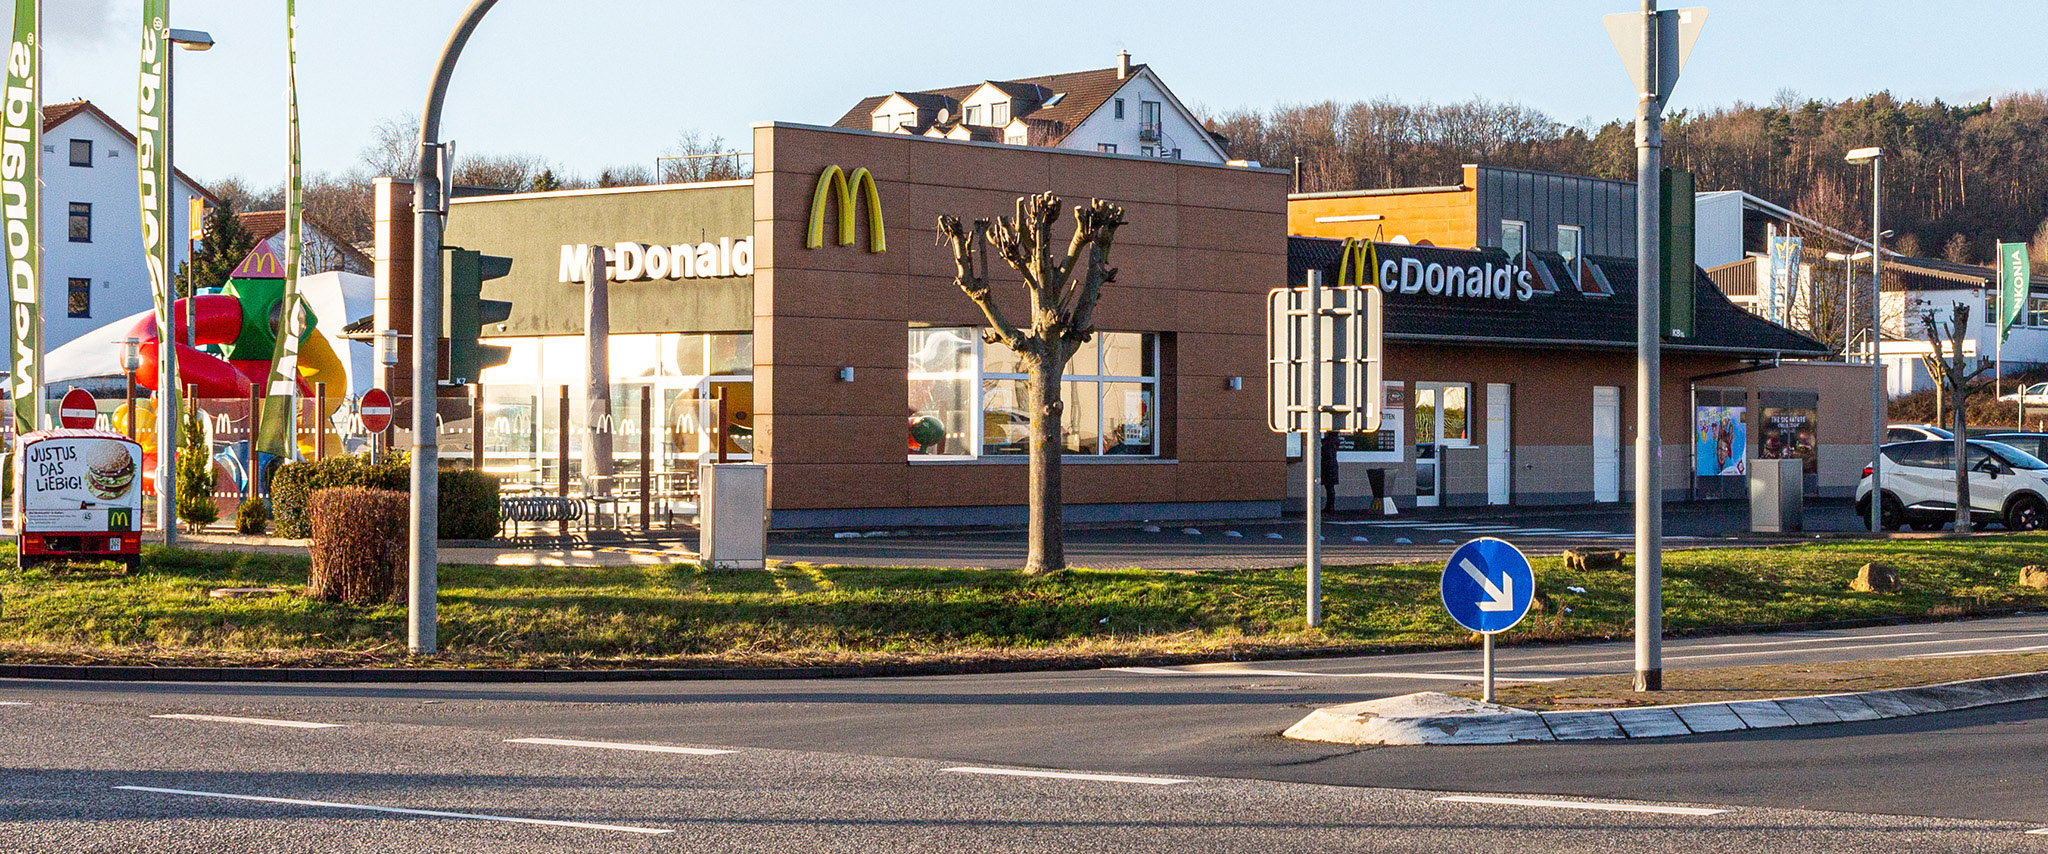 Das McDonald’s-Restaurant in Reiskirchen